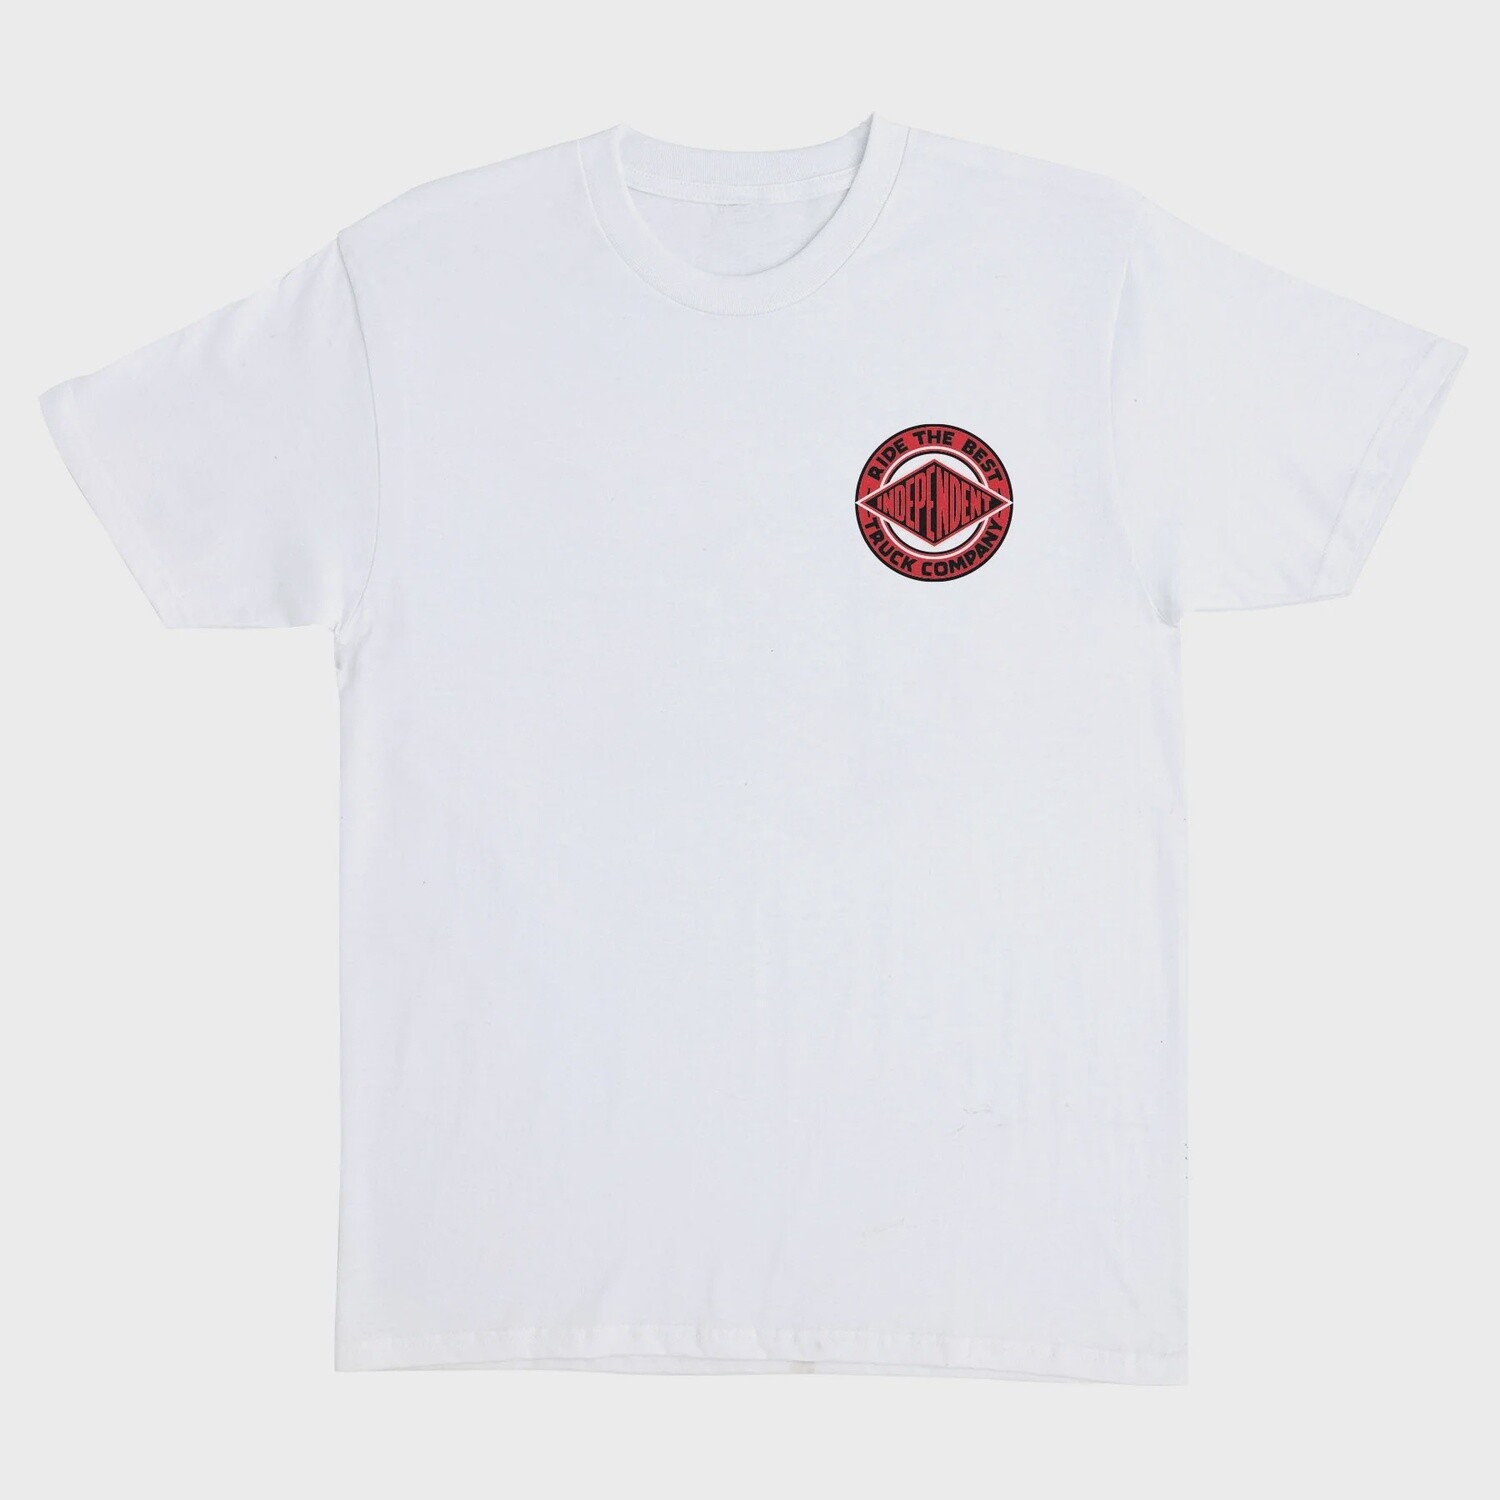 Independent BTG Summit White W/ Red T-shirt